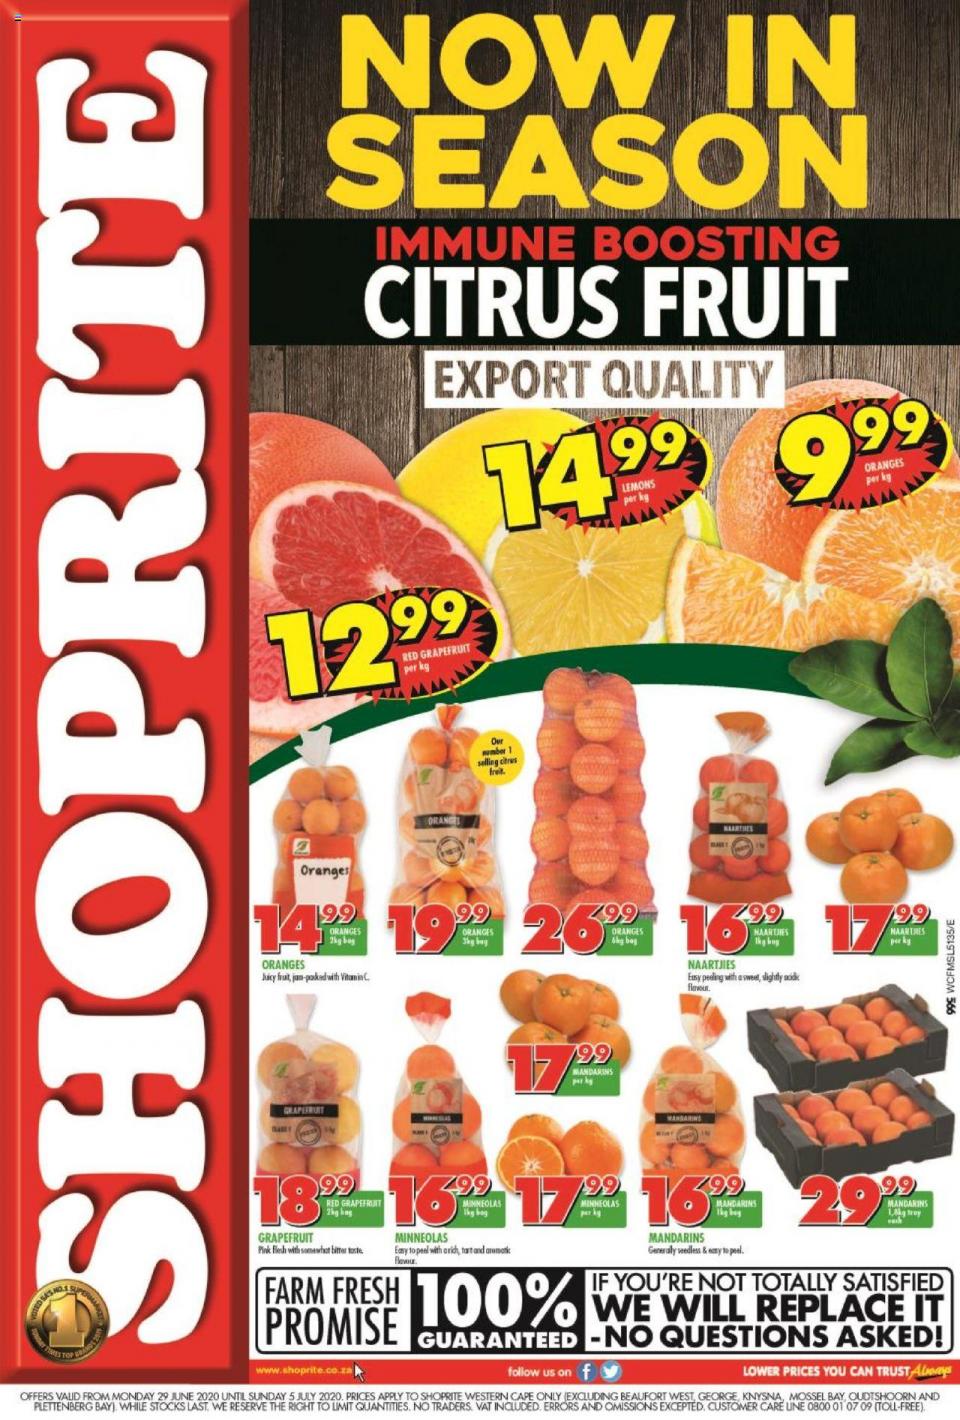 Shoprite Specials Citrus Fruit Promotion 29 June 2020 | Western Cape